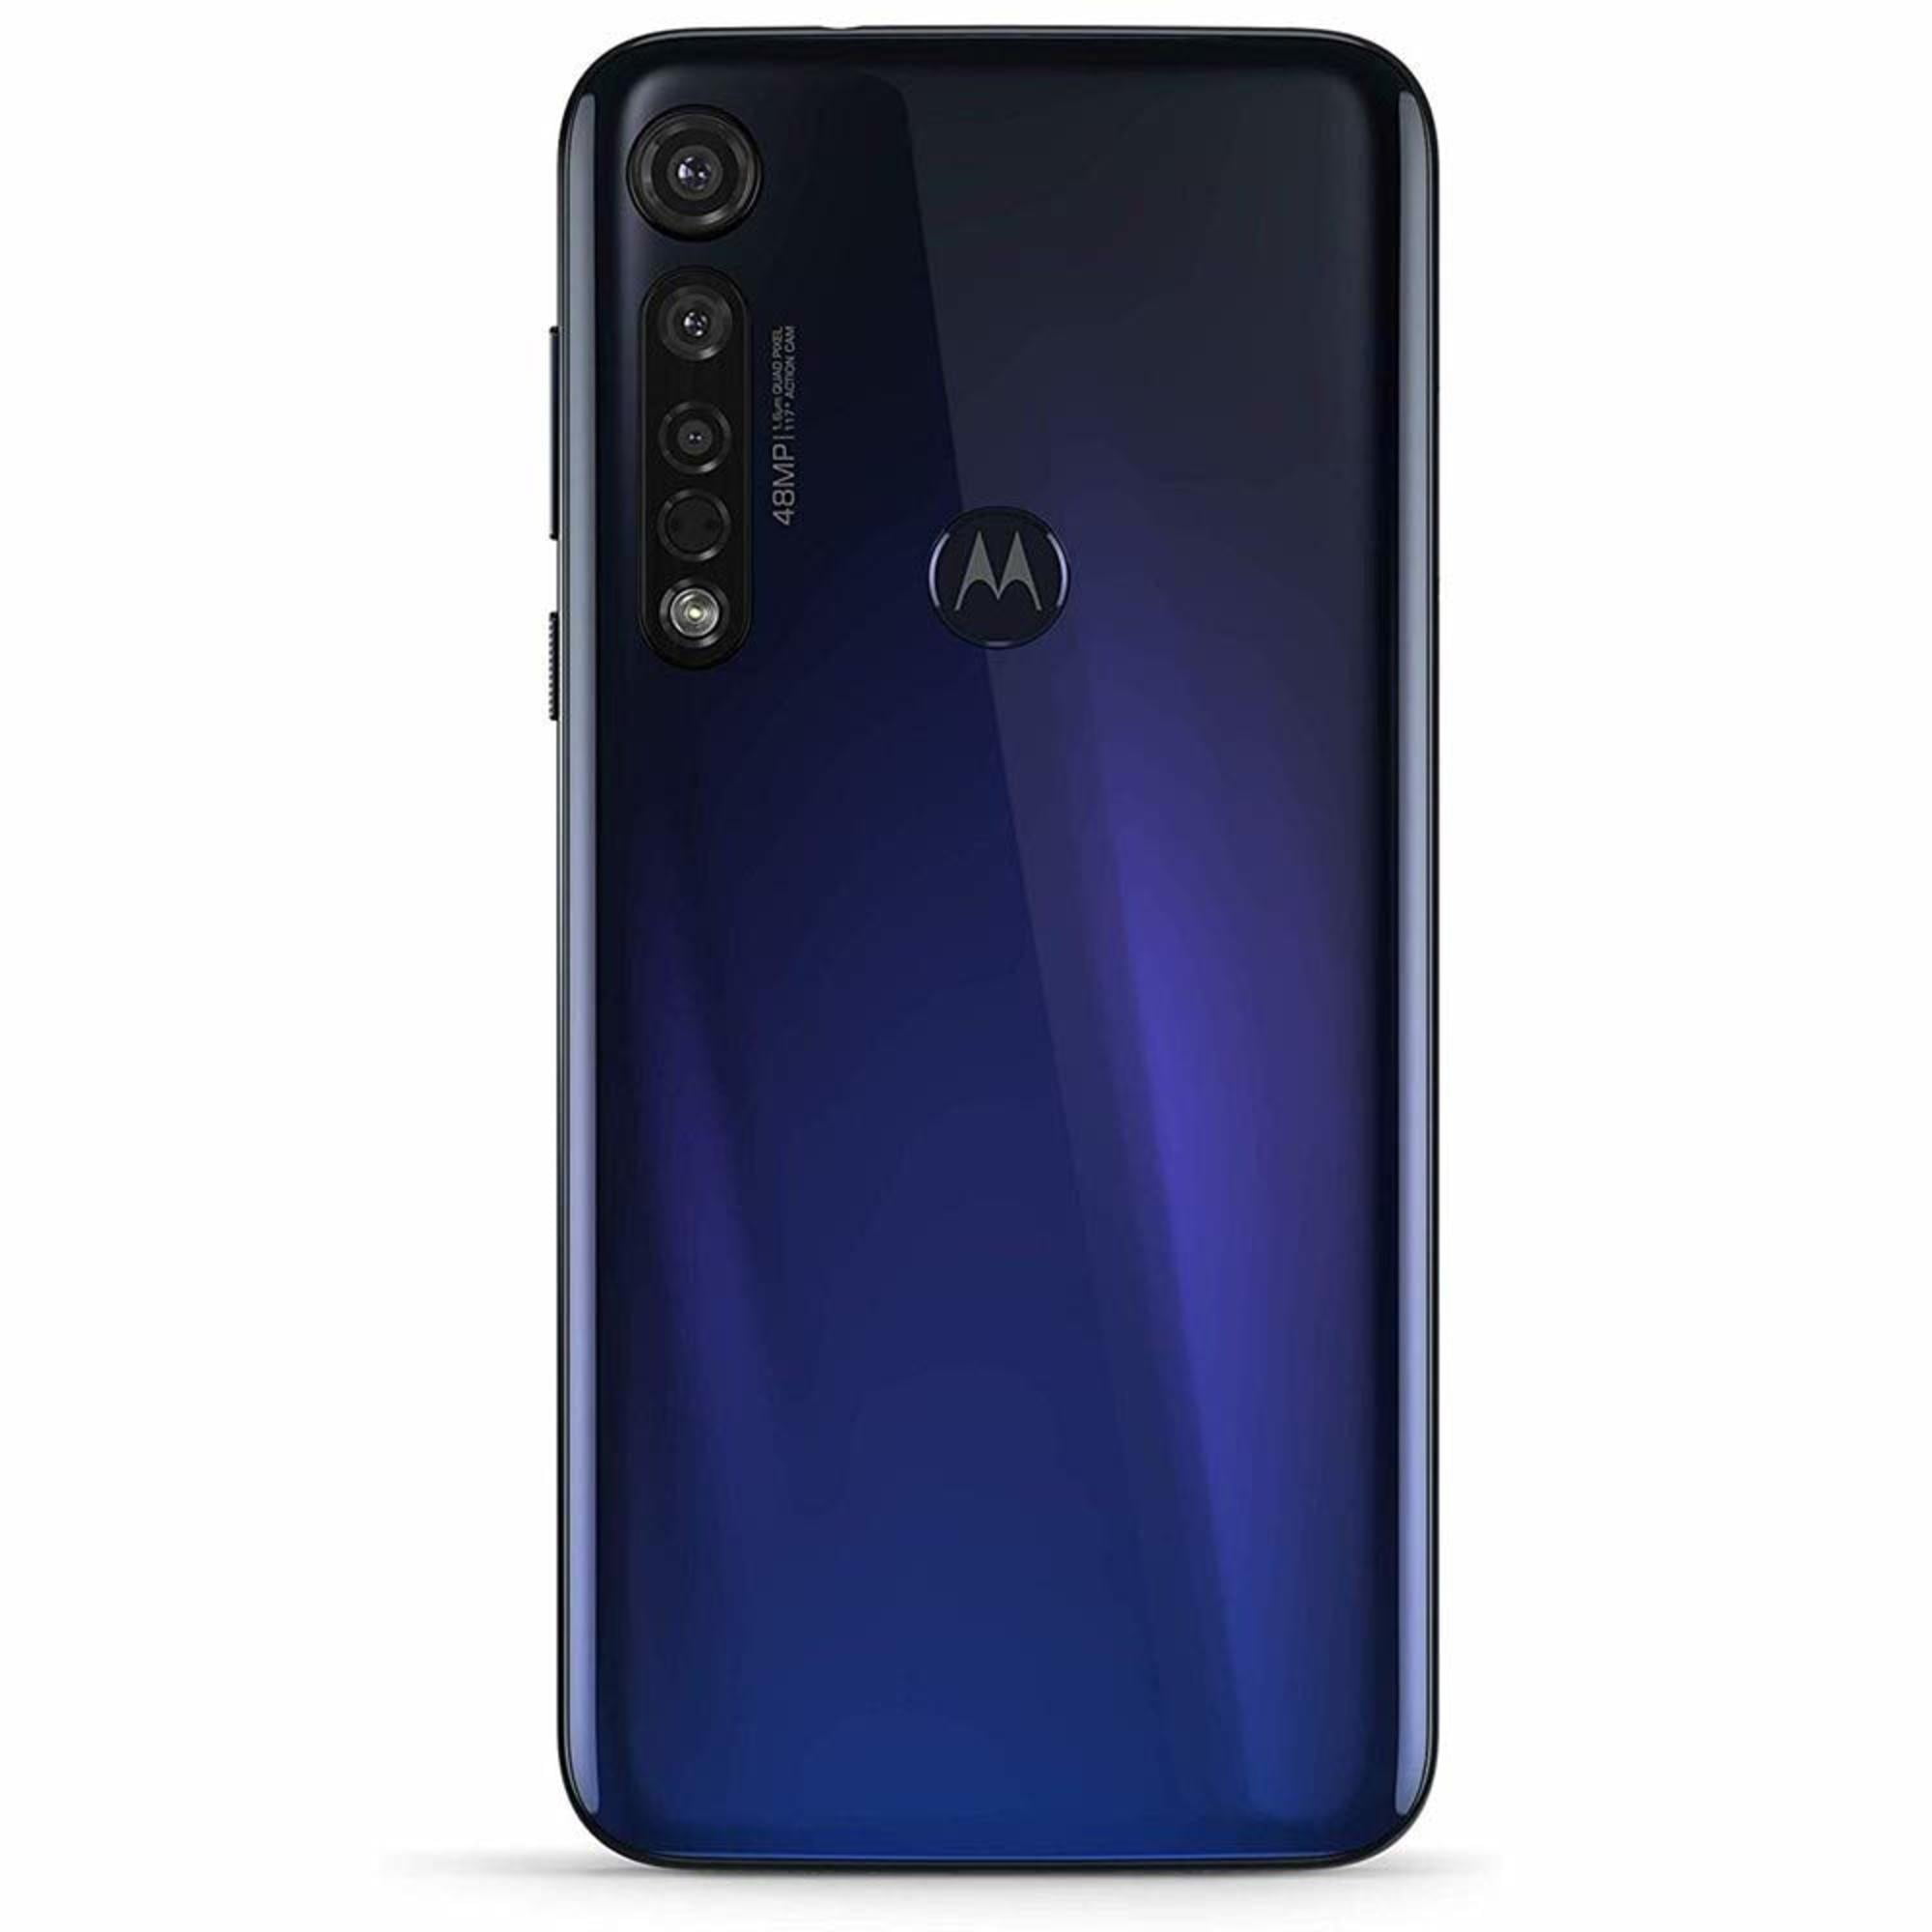 Motorola Moto G8 Plus 64GB XT2019-2 Hybrid Dual SIM GSM Unlocked